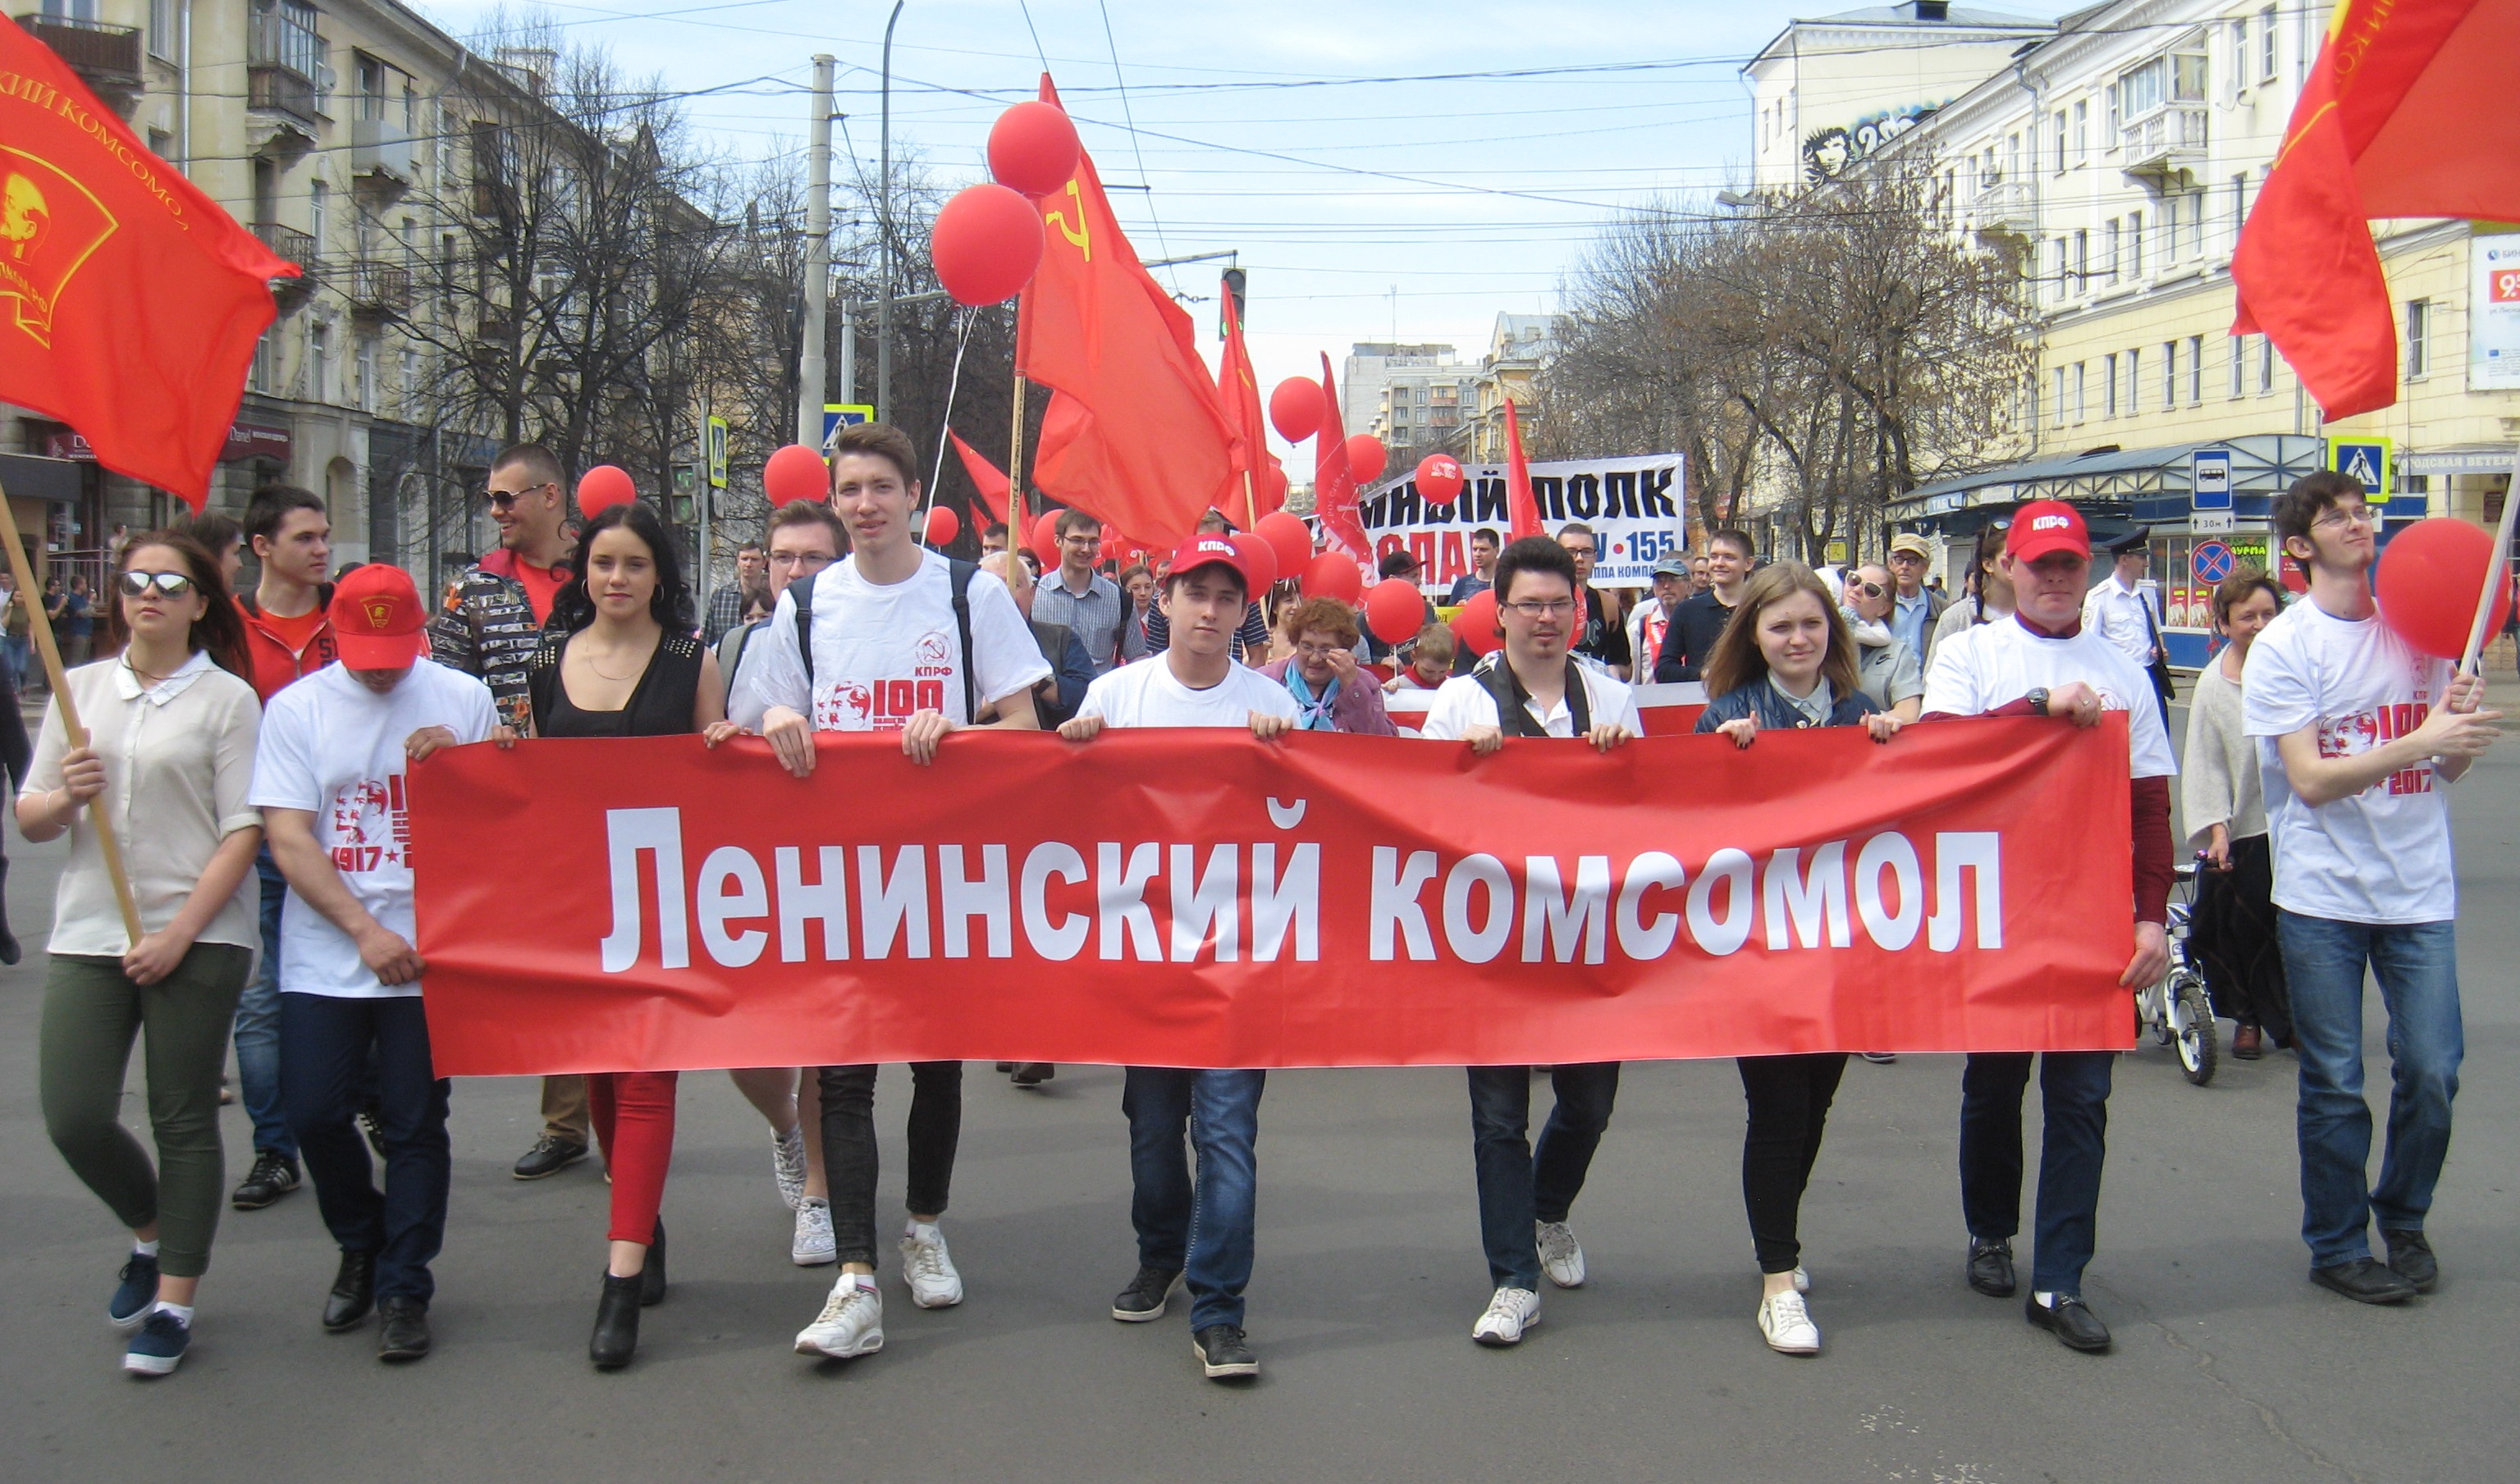 Призывы и лозунги ЦК ЛКСМ к 103-ой годовщине образования Всесоюзного Ленинского Коммунистического Союза молодежи